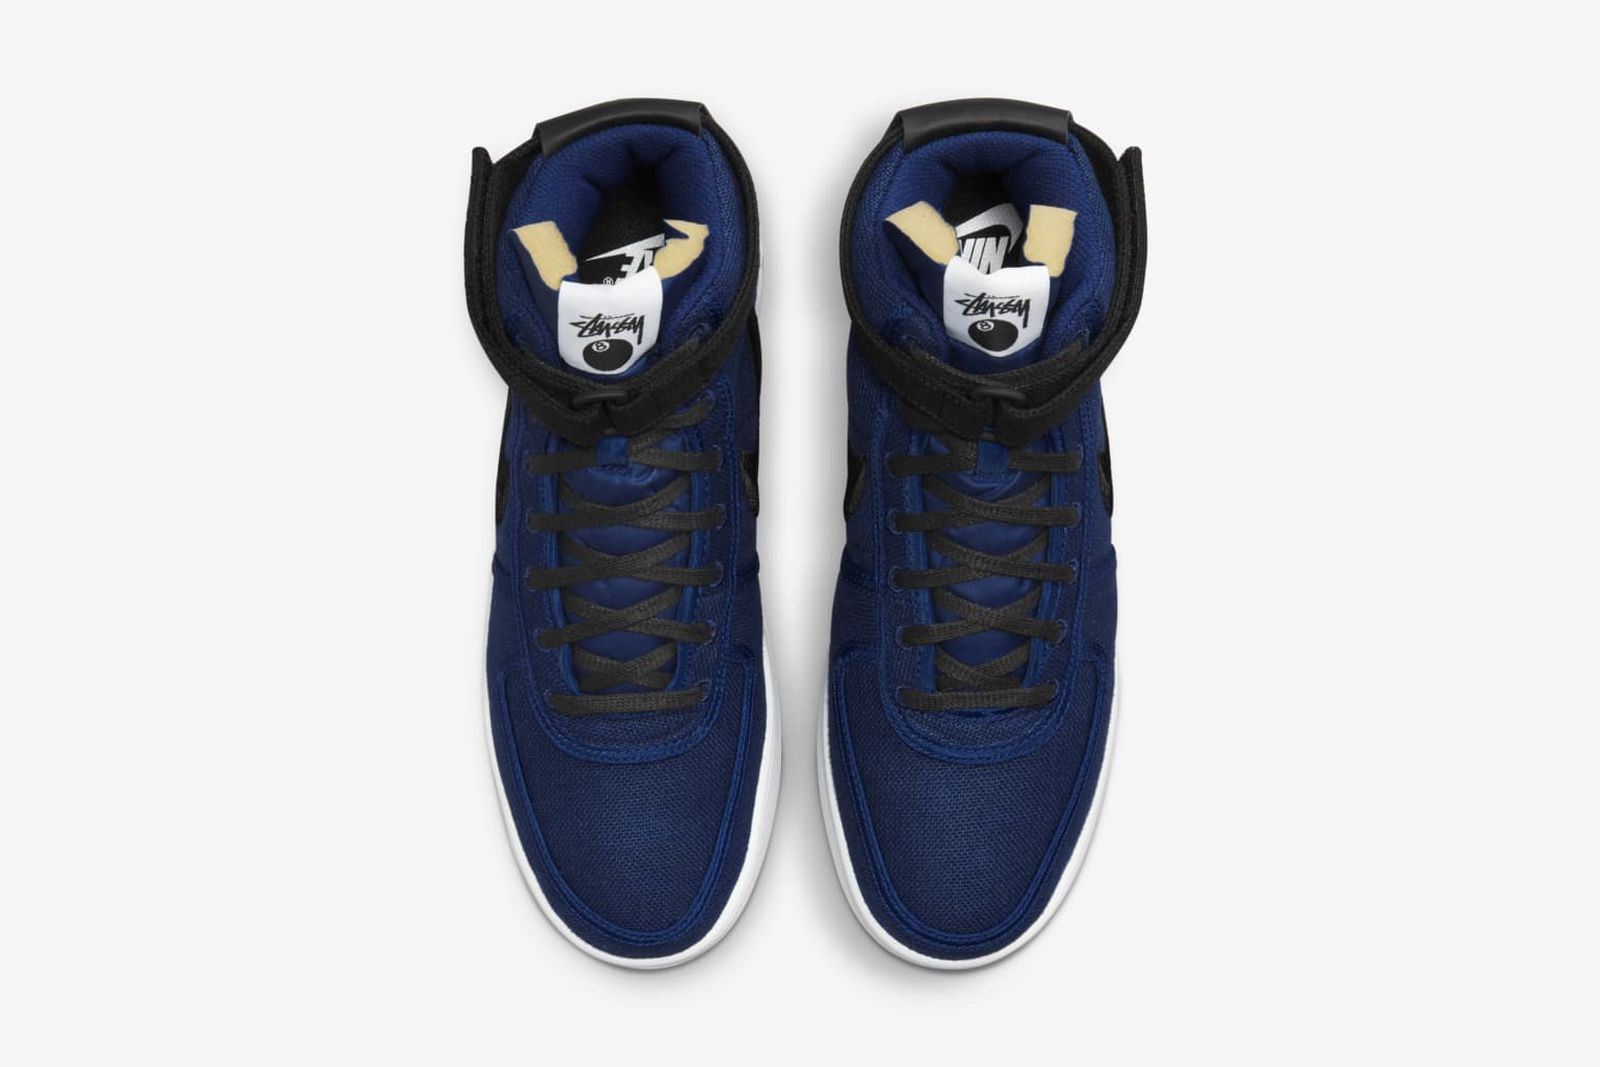 Stüssy & Nike to Drop Vandal Sneaker Collab in Textural Hemp